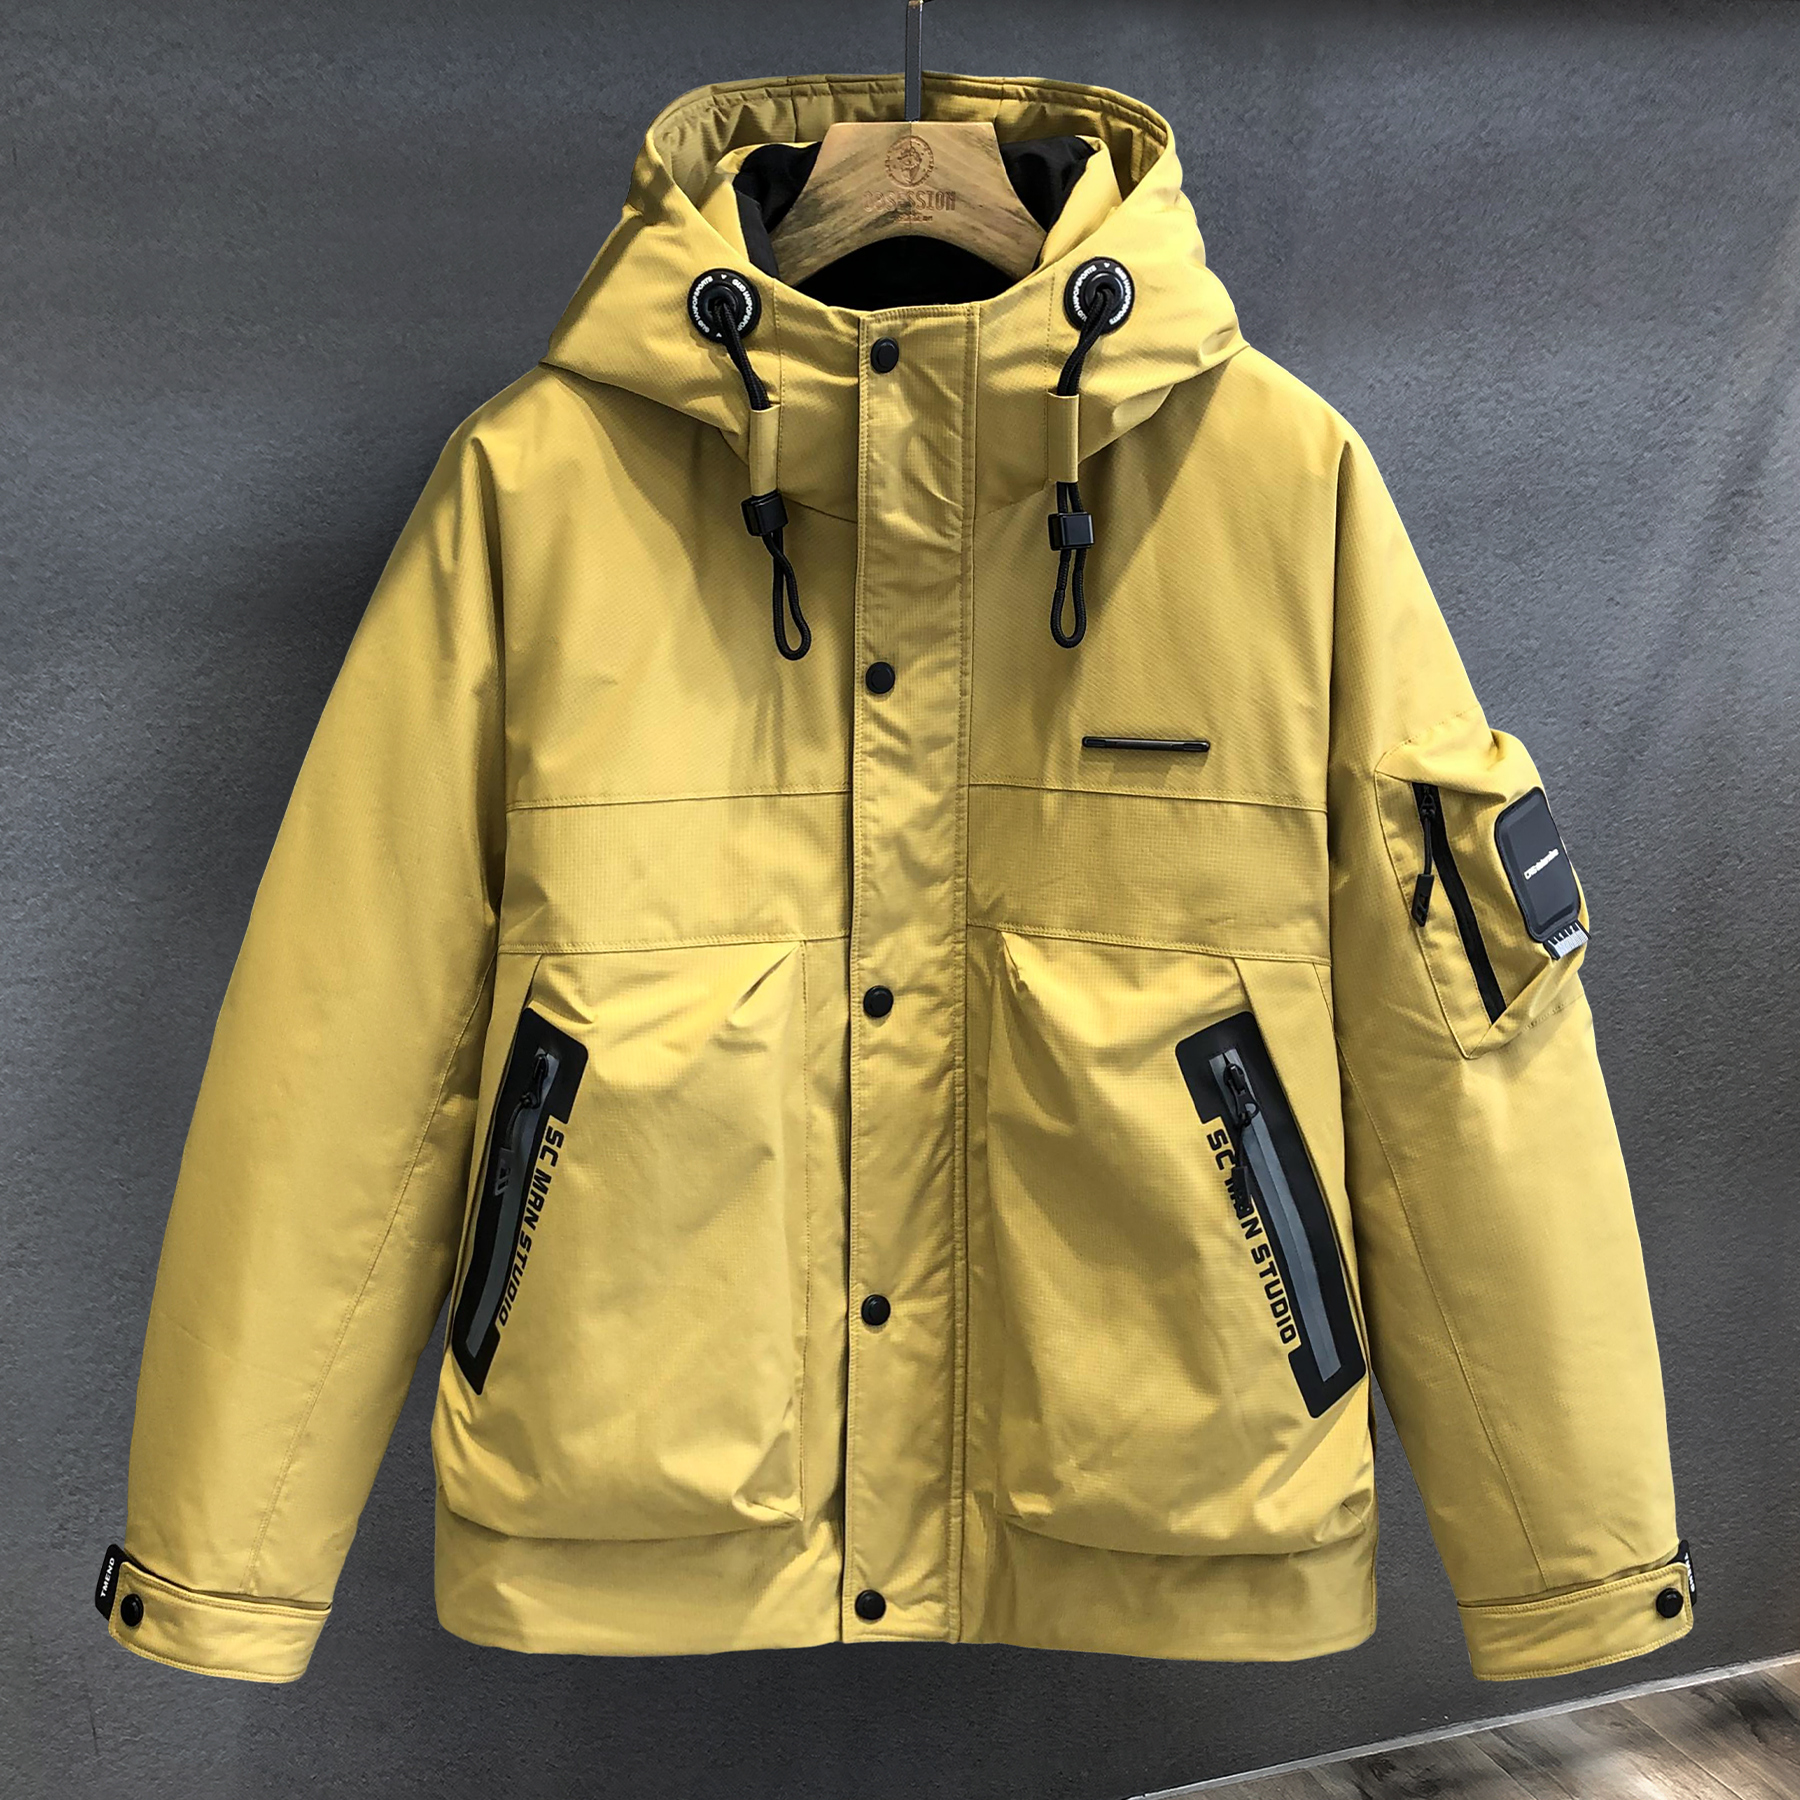 重磅伽玛三防防护硬壳工装加厚羽绒服男士冬季保暖潮牌冲锋衣外套